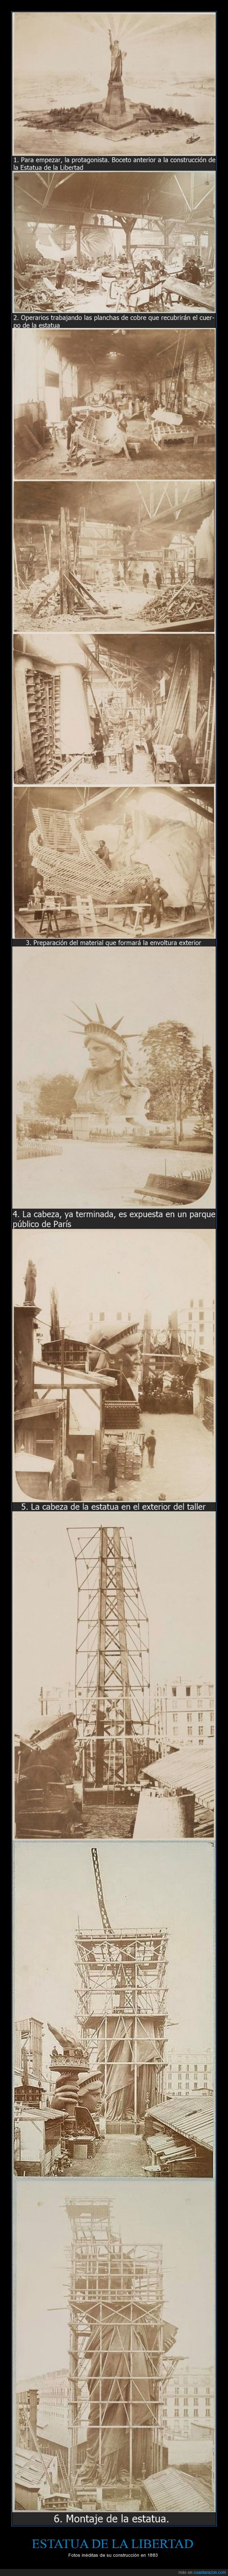 construcción,EE.UU.,Estatua de la Libertad,Francia,Frederic Auguste Bartholdi,Gustave Eiffel,inéditas